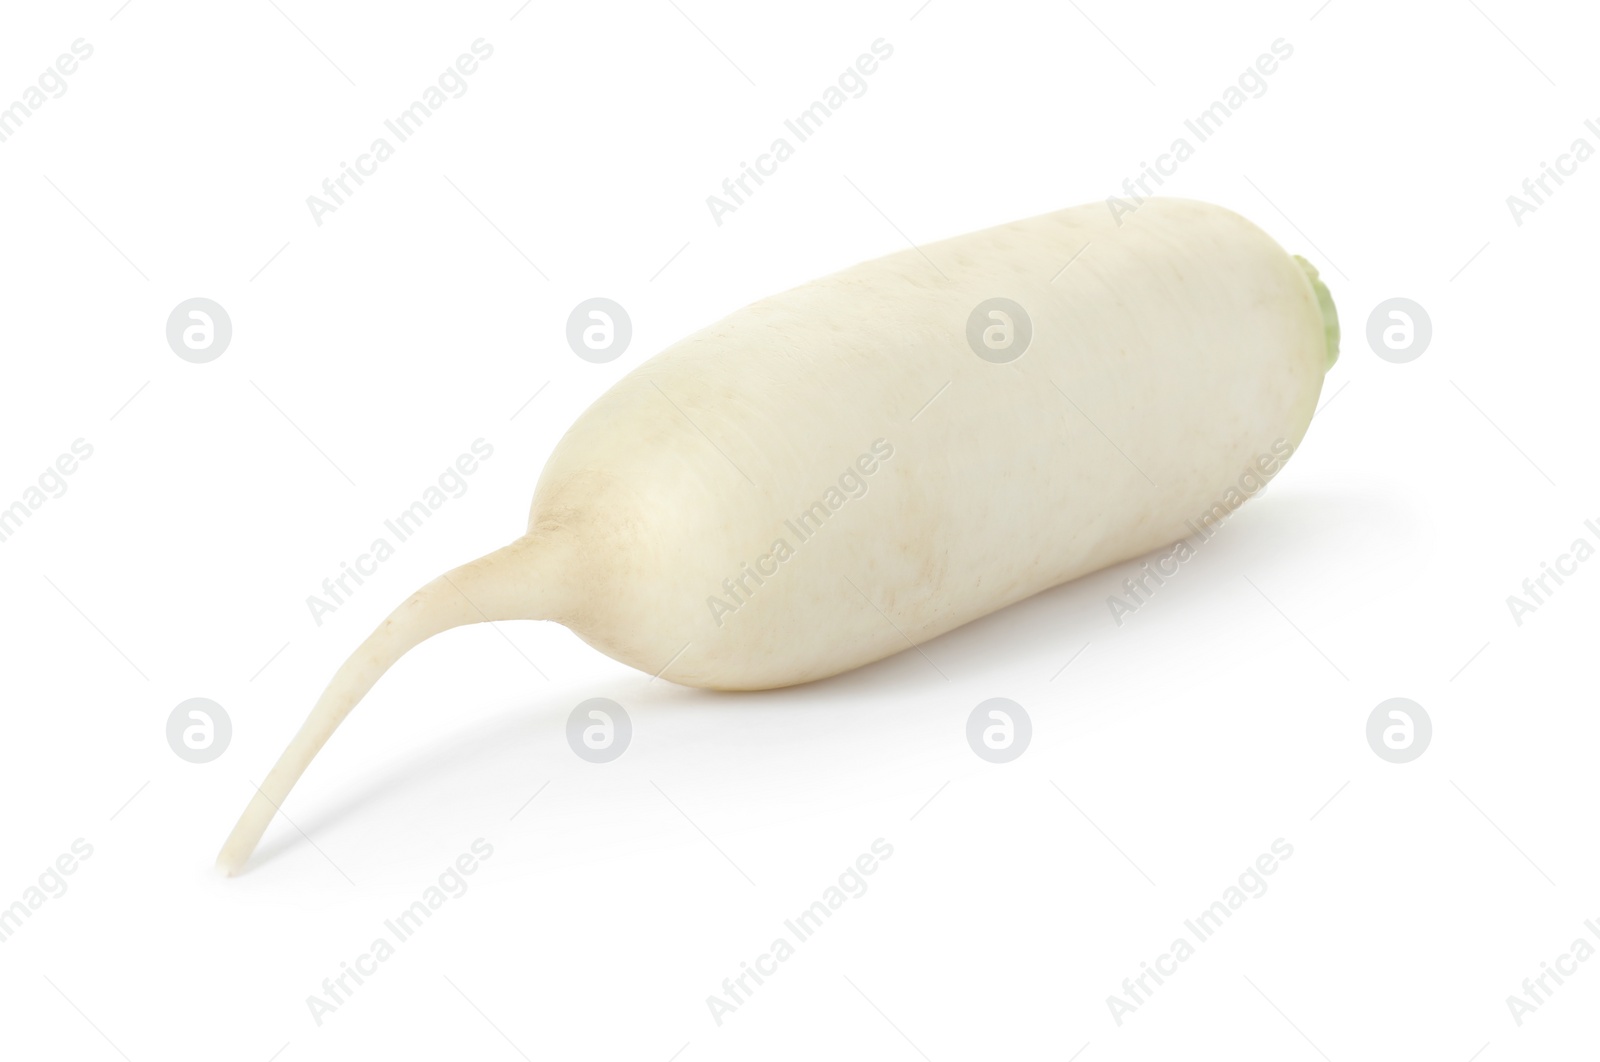 Photo of Whole fresh ripe turnip on white background